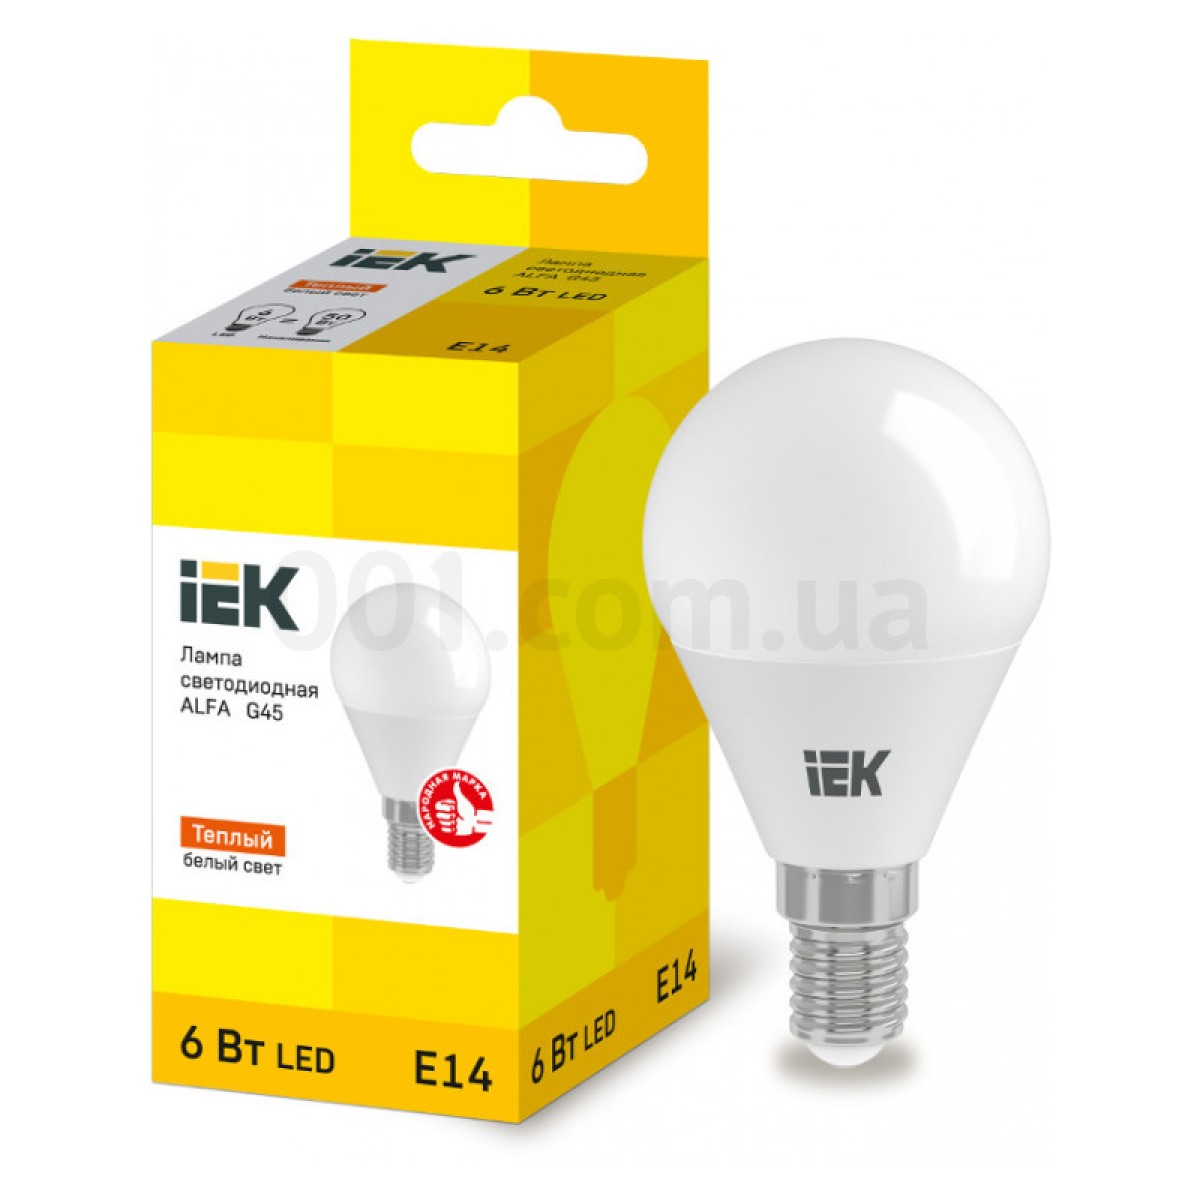 Світлодіодна лампа LED ALFA G45 (куля) 6 Вт 230В 3000К E14, IEK 256_256.jpg